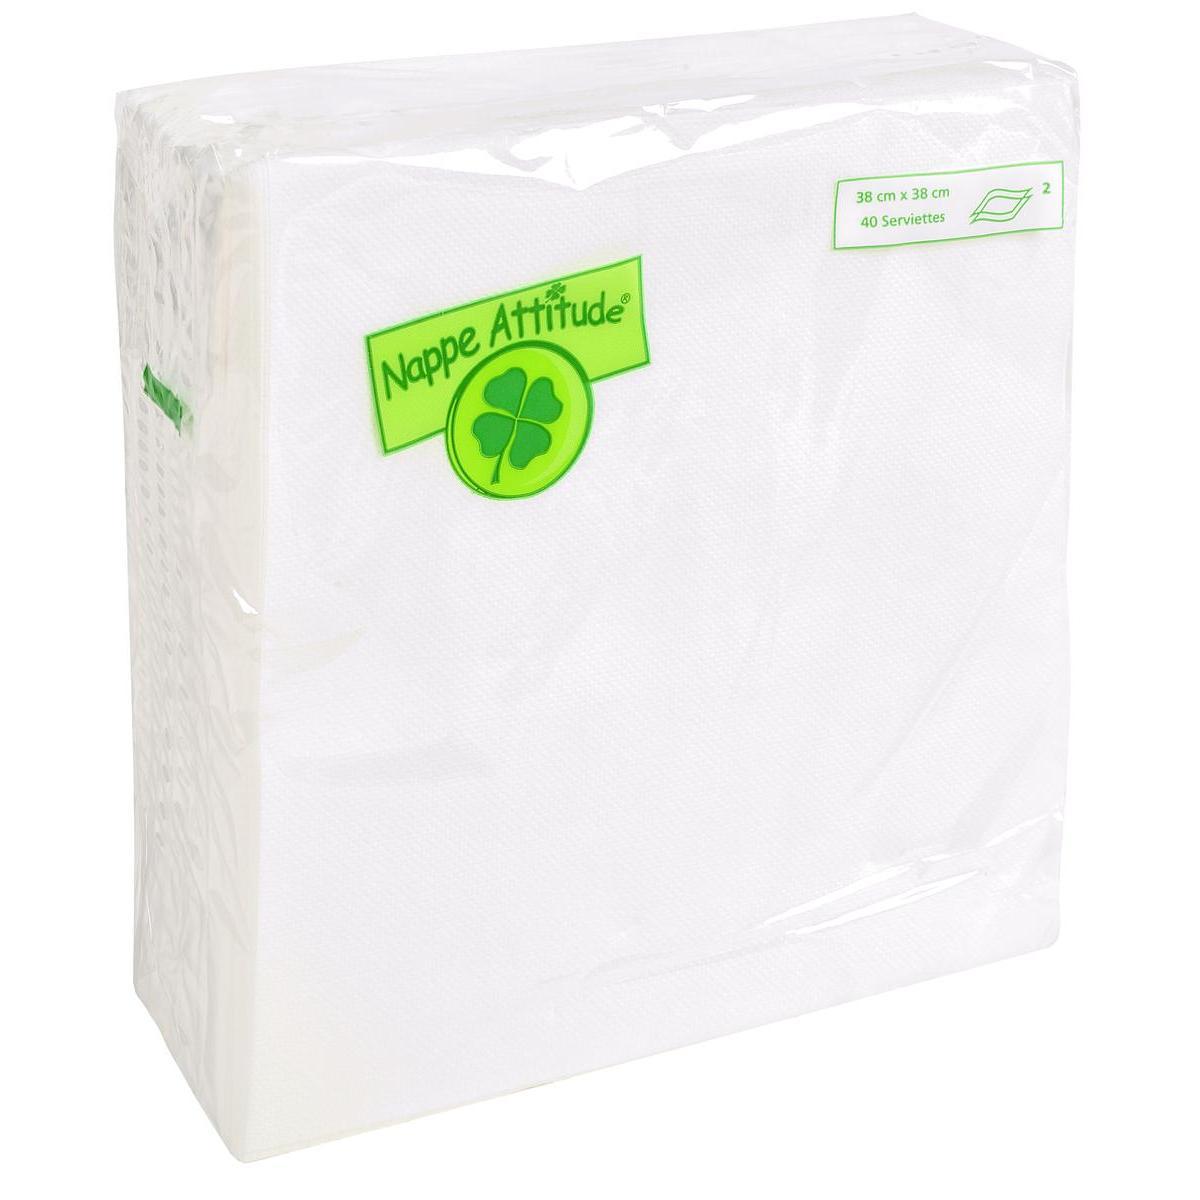 40 serviettes effet gaufré - Ouate de cellulose - 38 x 38 cm - Blanc